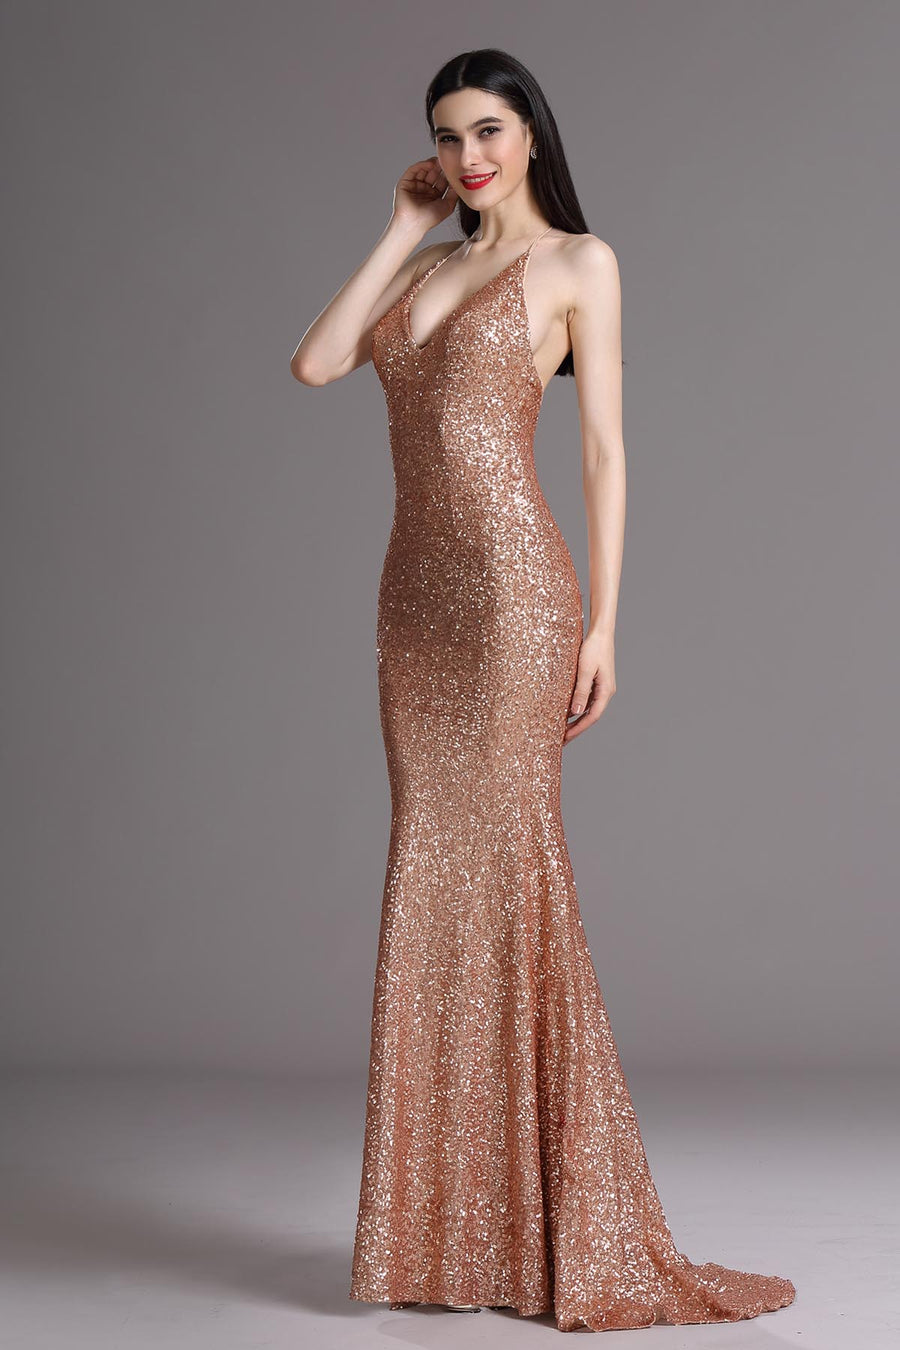 Mermaid/Trumpet Halter Sleeveless Full Length Sequined Promo Dresses